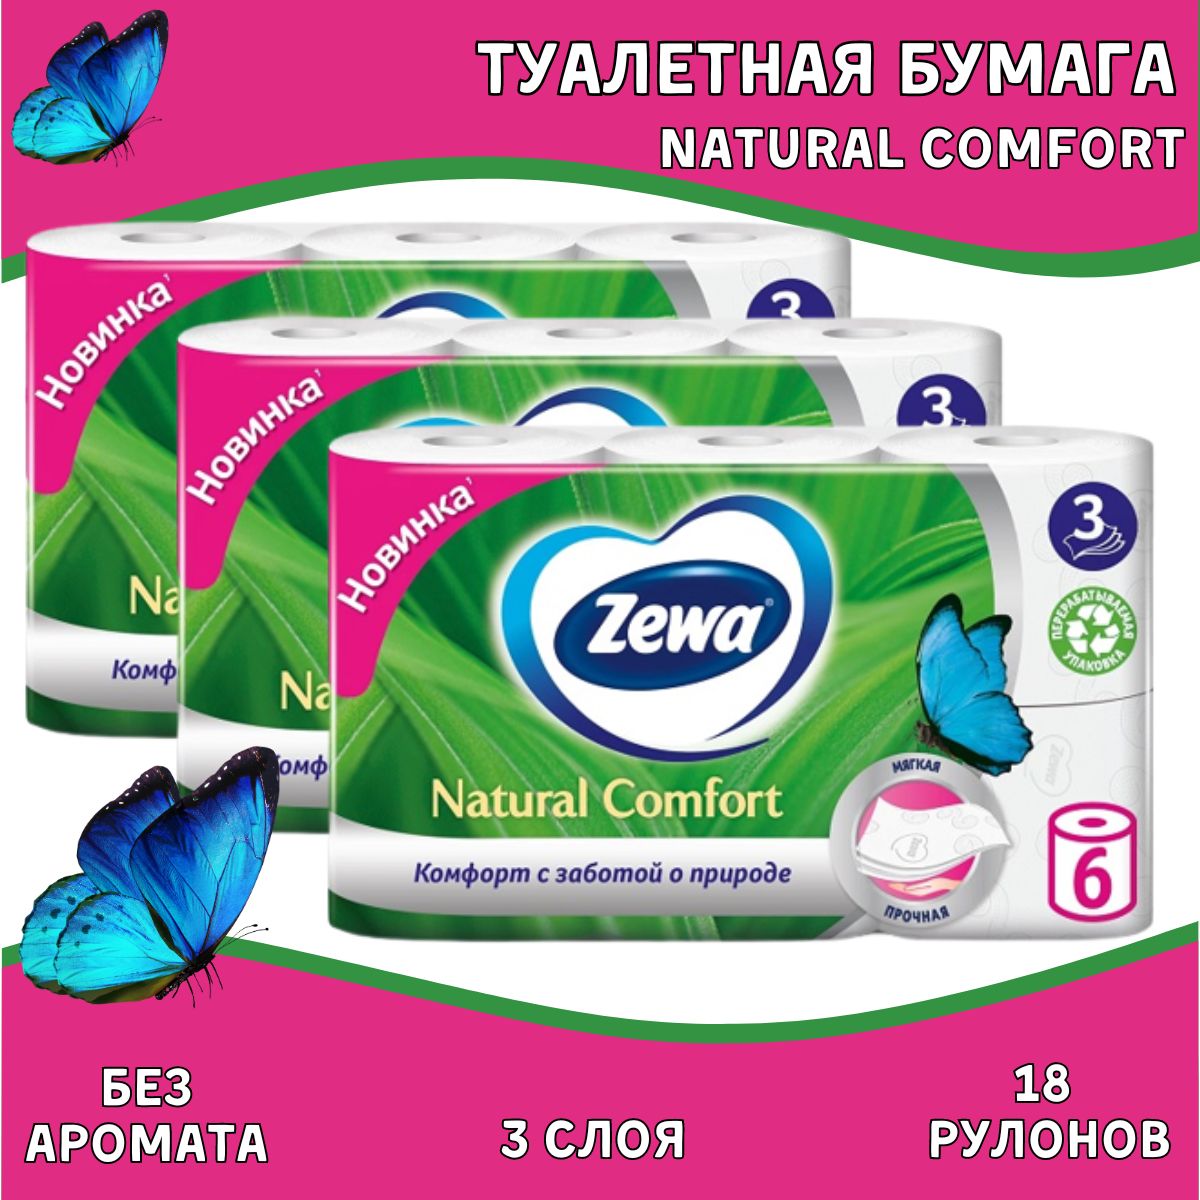 Zewa natural Comfort туалетная бумага 3сл 6рул. Салфетки Zewa natural Comfort 3 слоя. Zewa natural comfort